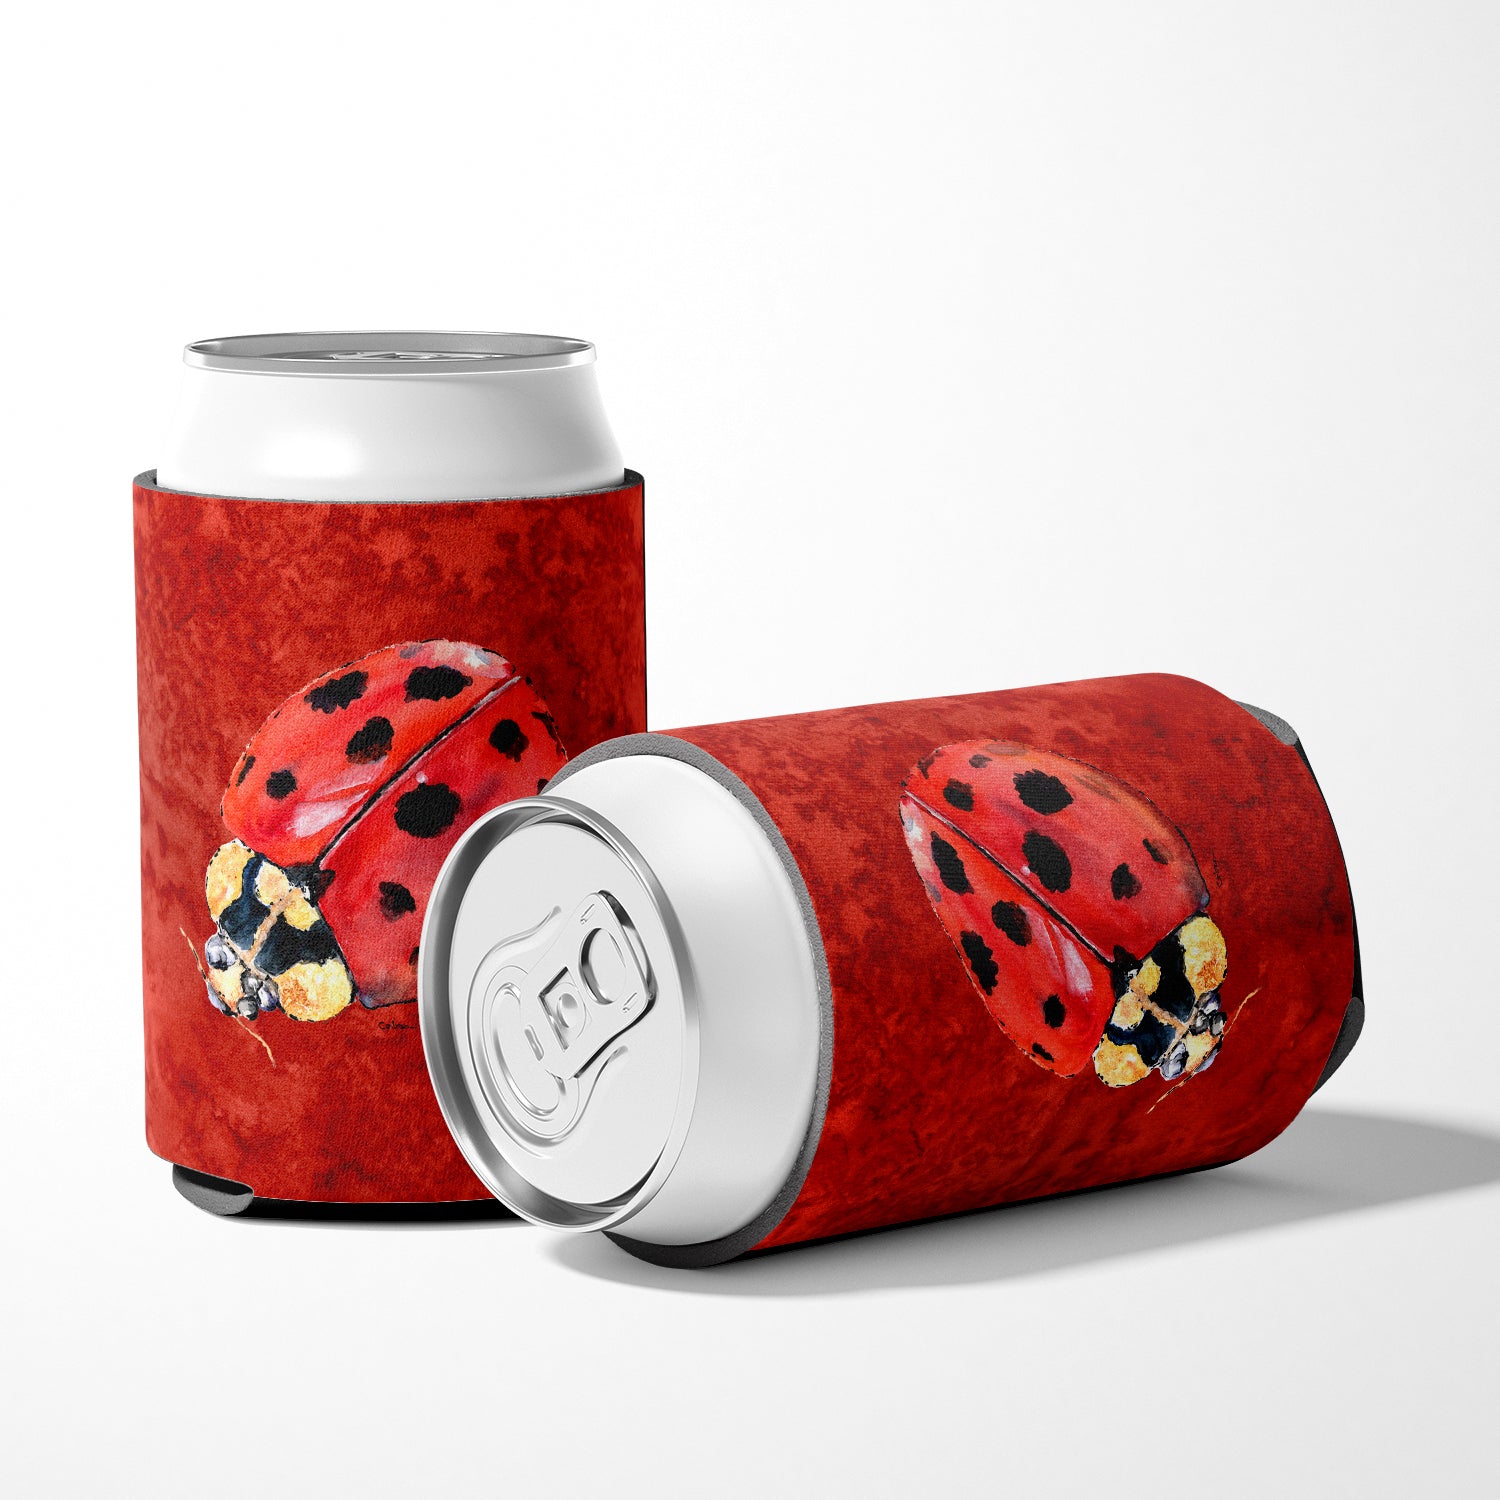 Lady Bug on Deep Red Can or Bottle Beverage Insulator Hugger